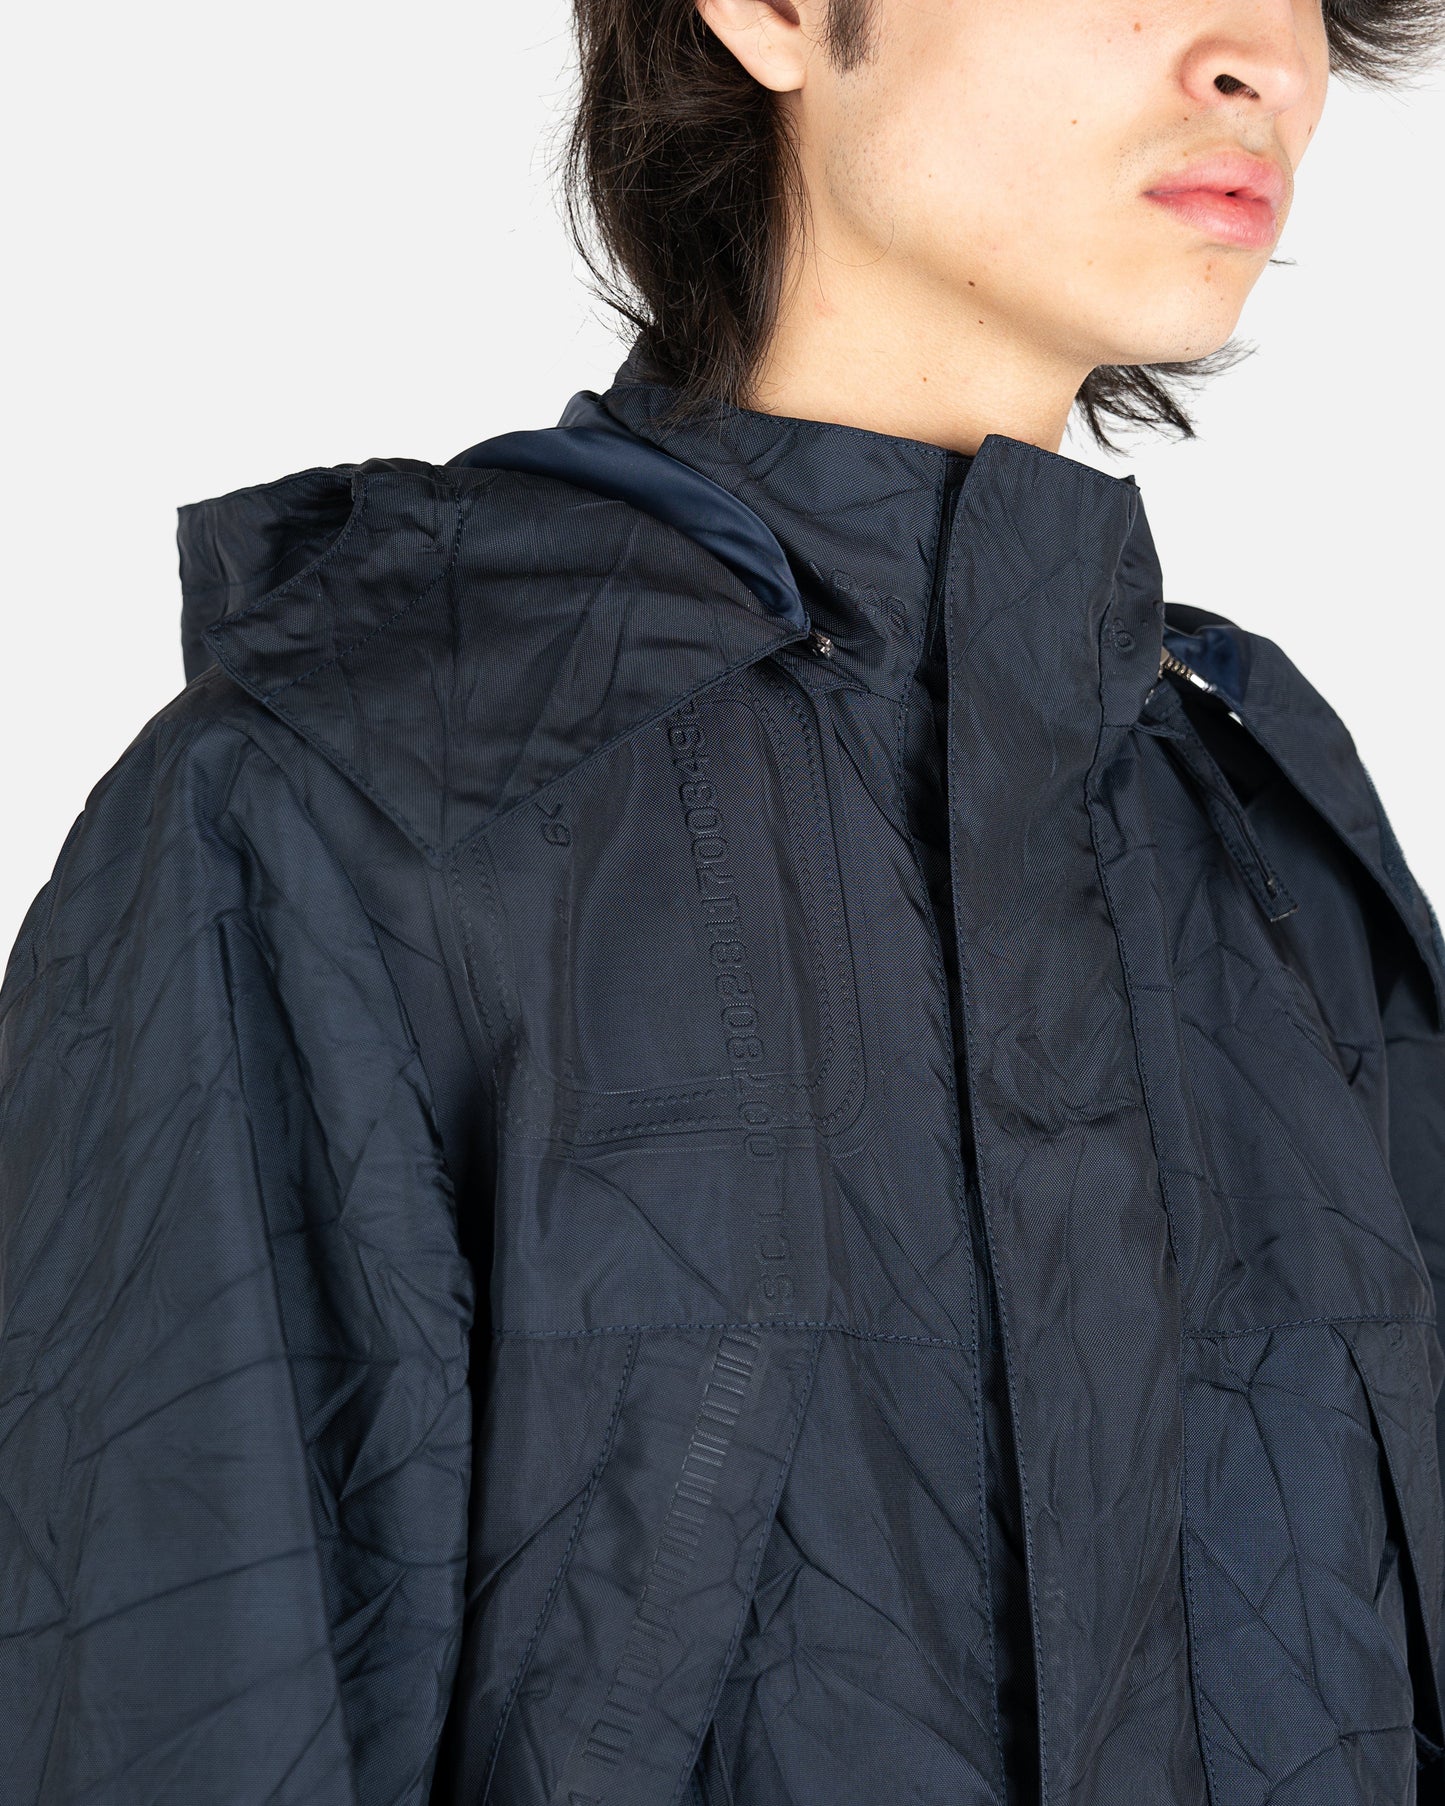 KANGHYUK Men's Jackets Readymade Airbag Hoodie Jacket in Navy